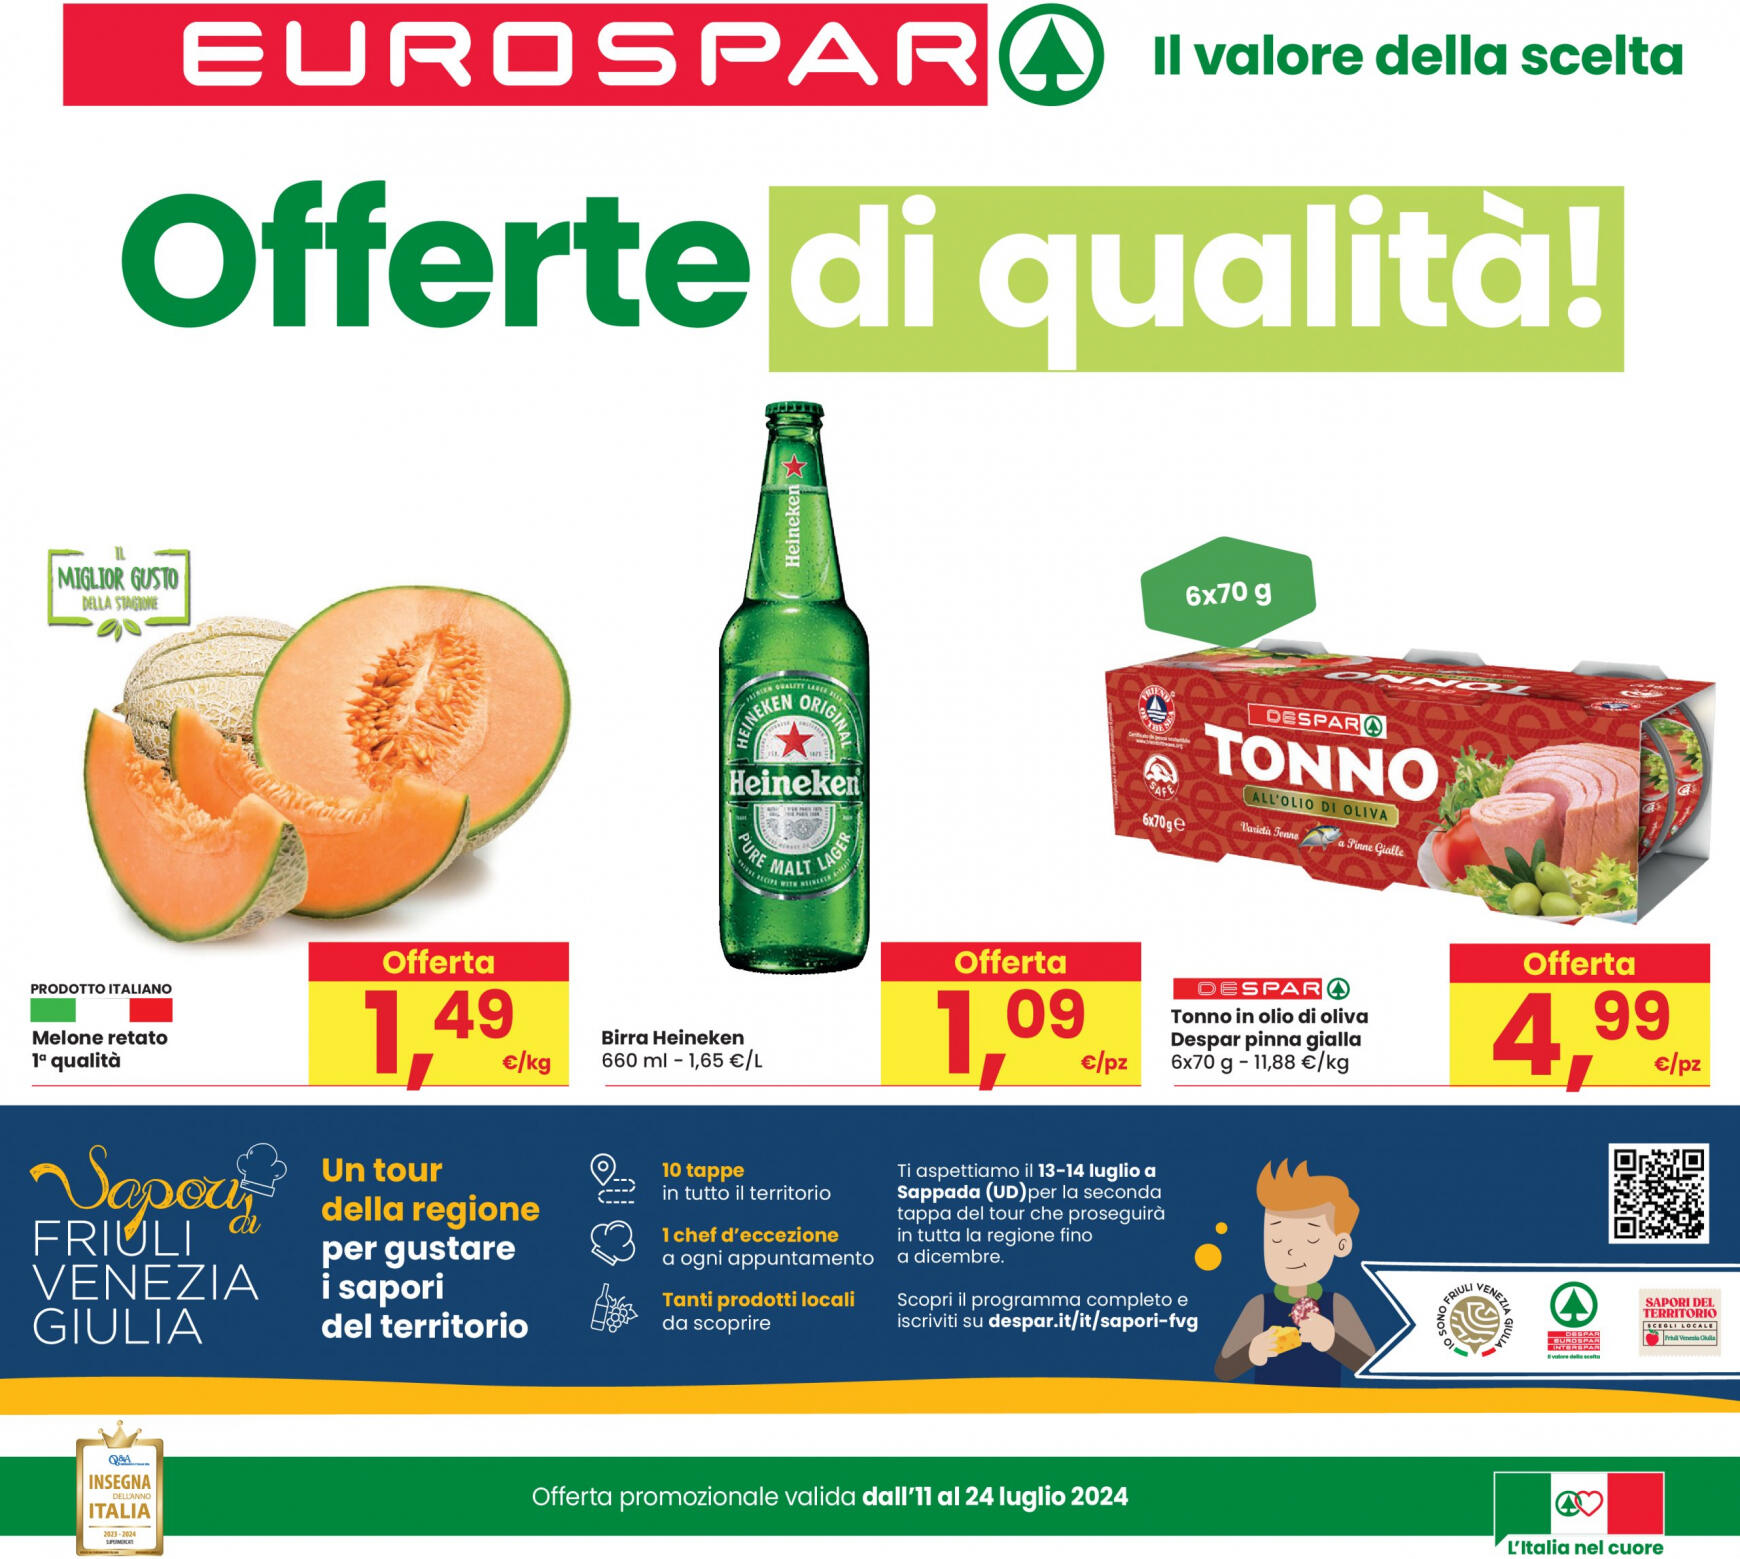 eurospar - Nuovo volantino Eurospar 11.07. - 24.07.